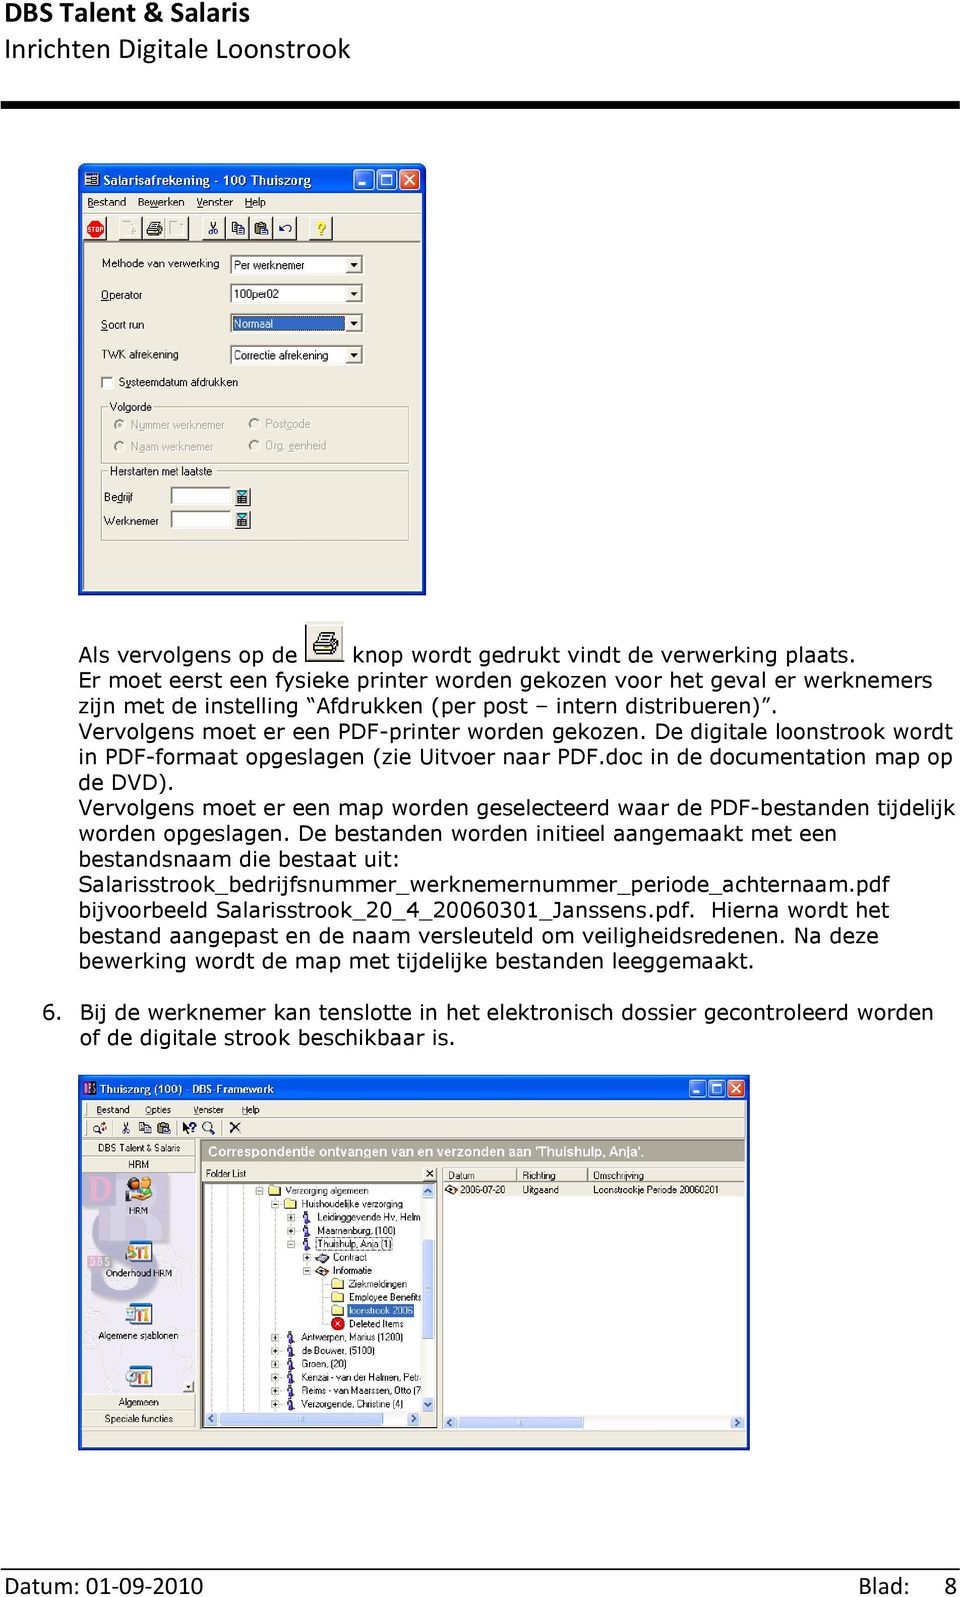 De digitale loonstrook wordt in PDF-formaat opgeslagen (zie Uitvoer naar PDF.doc in de documentation map op de DVD).